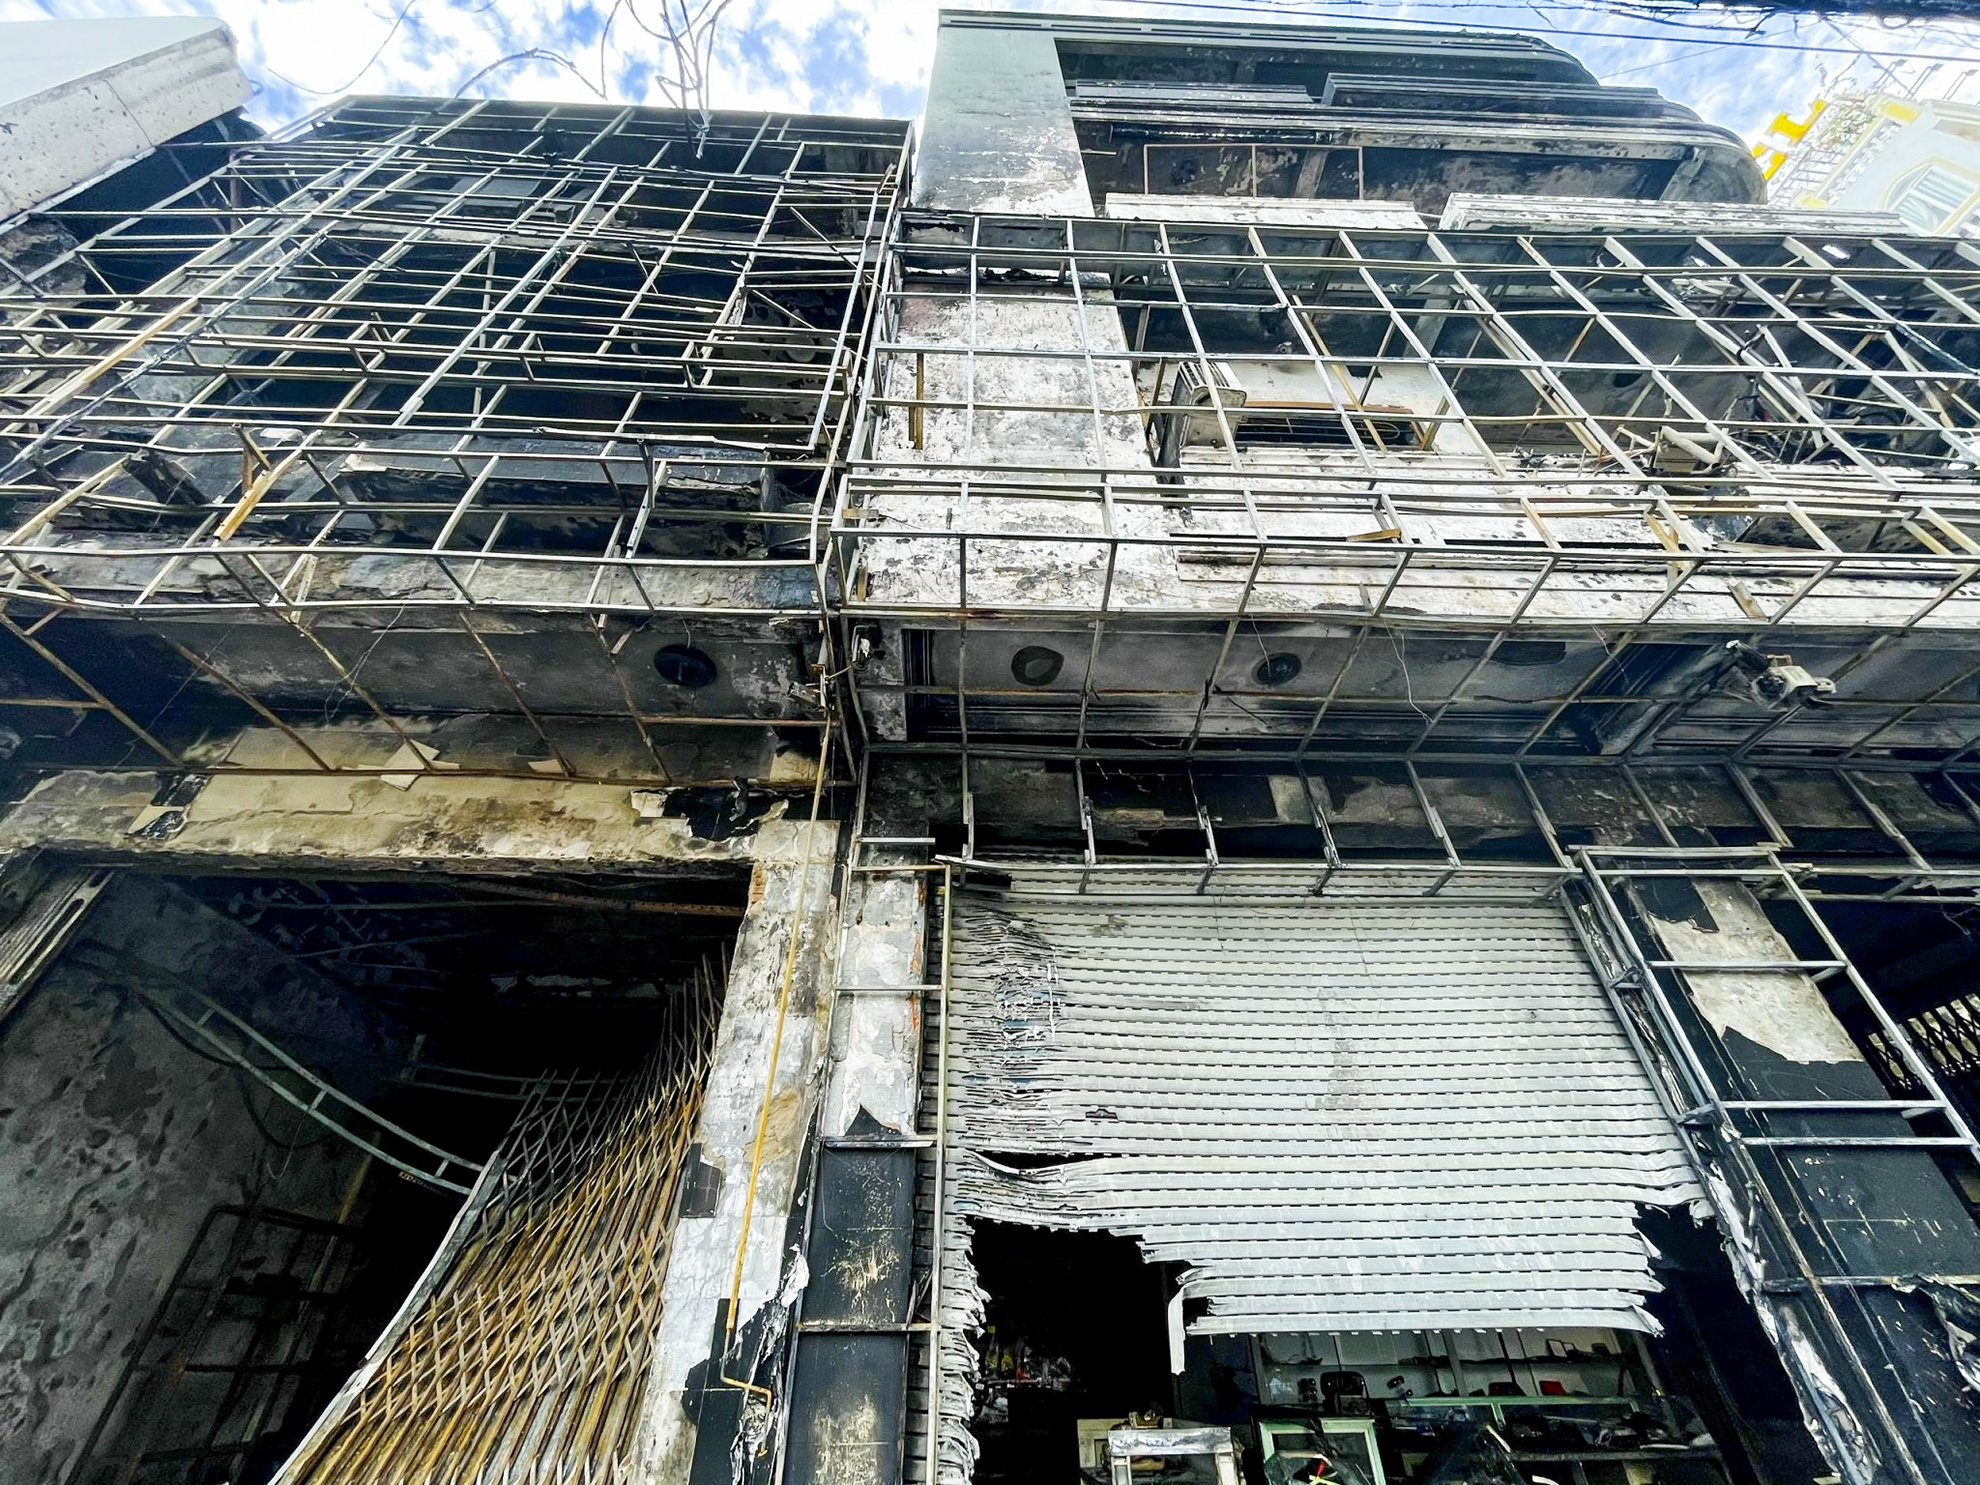 Phong tỏa 3 ngôi nhà bị cháy rụi ở Quảng Ngãi để điều tra vụ hỏa hoạn - Ảnh 3.